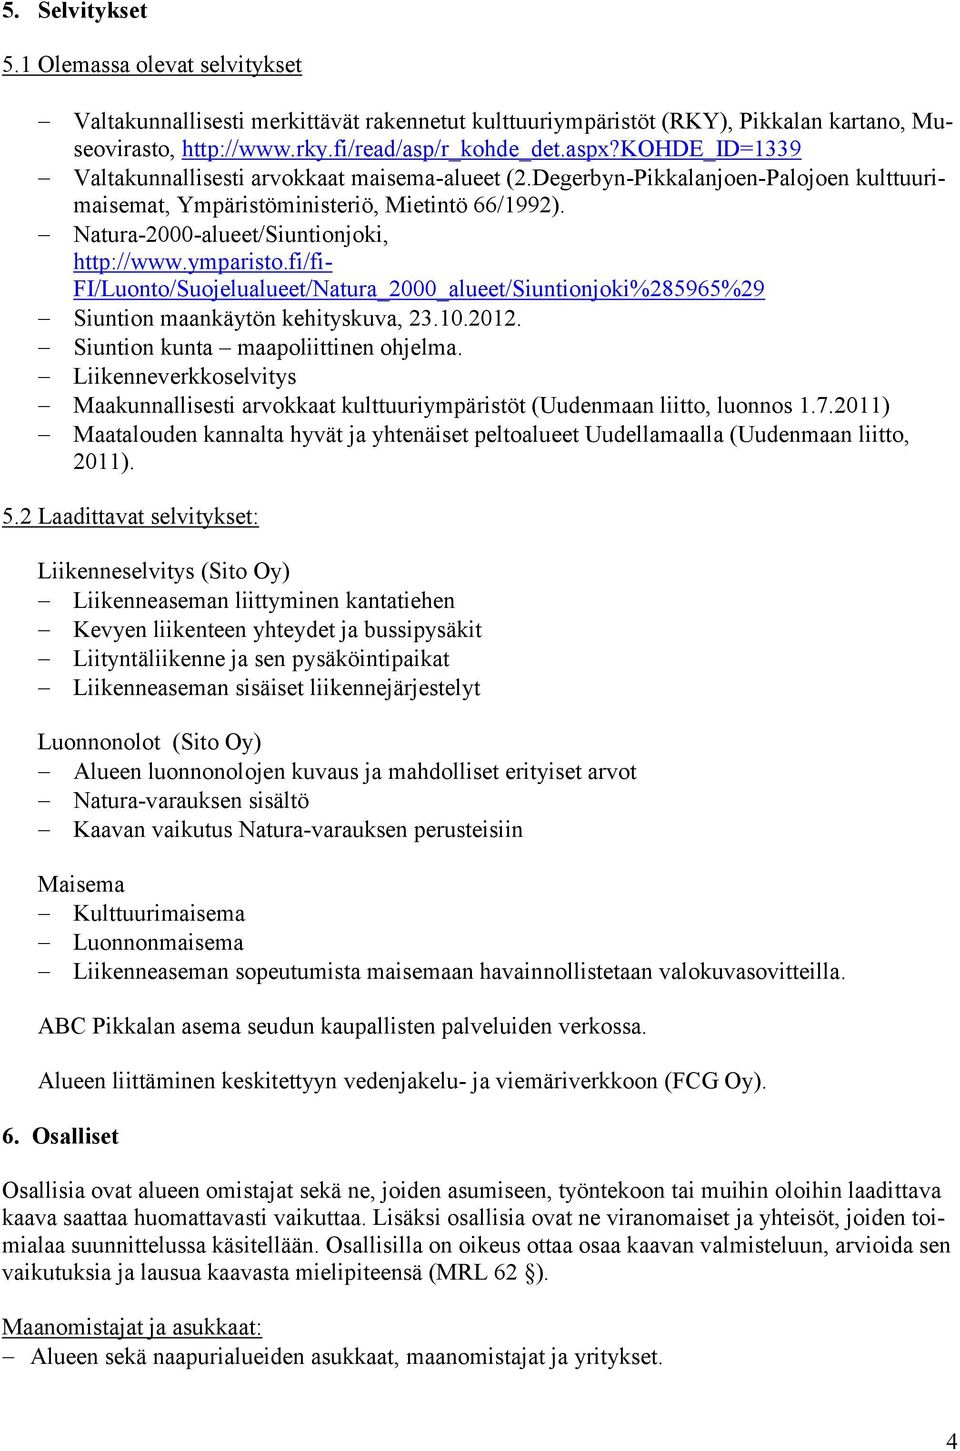 ymparisto.fi/fi- FI/Luonto/Suojelualueet/Natura_2000_alueet/Siuntionjoki%285965%29 Siuntion maankäytön kehityskuva, 23.10.2012. Siuntion kunta maapoliittinen ohjelma.